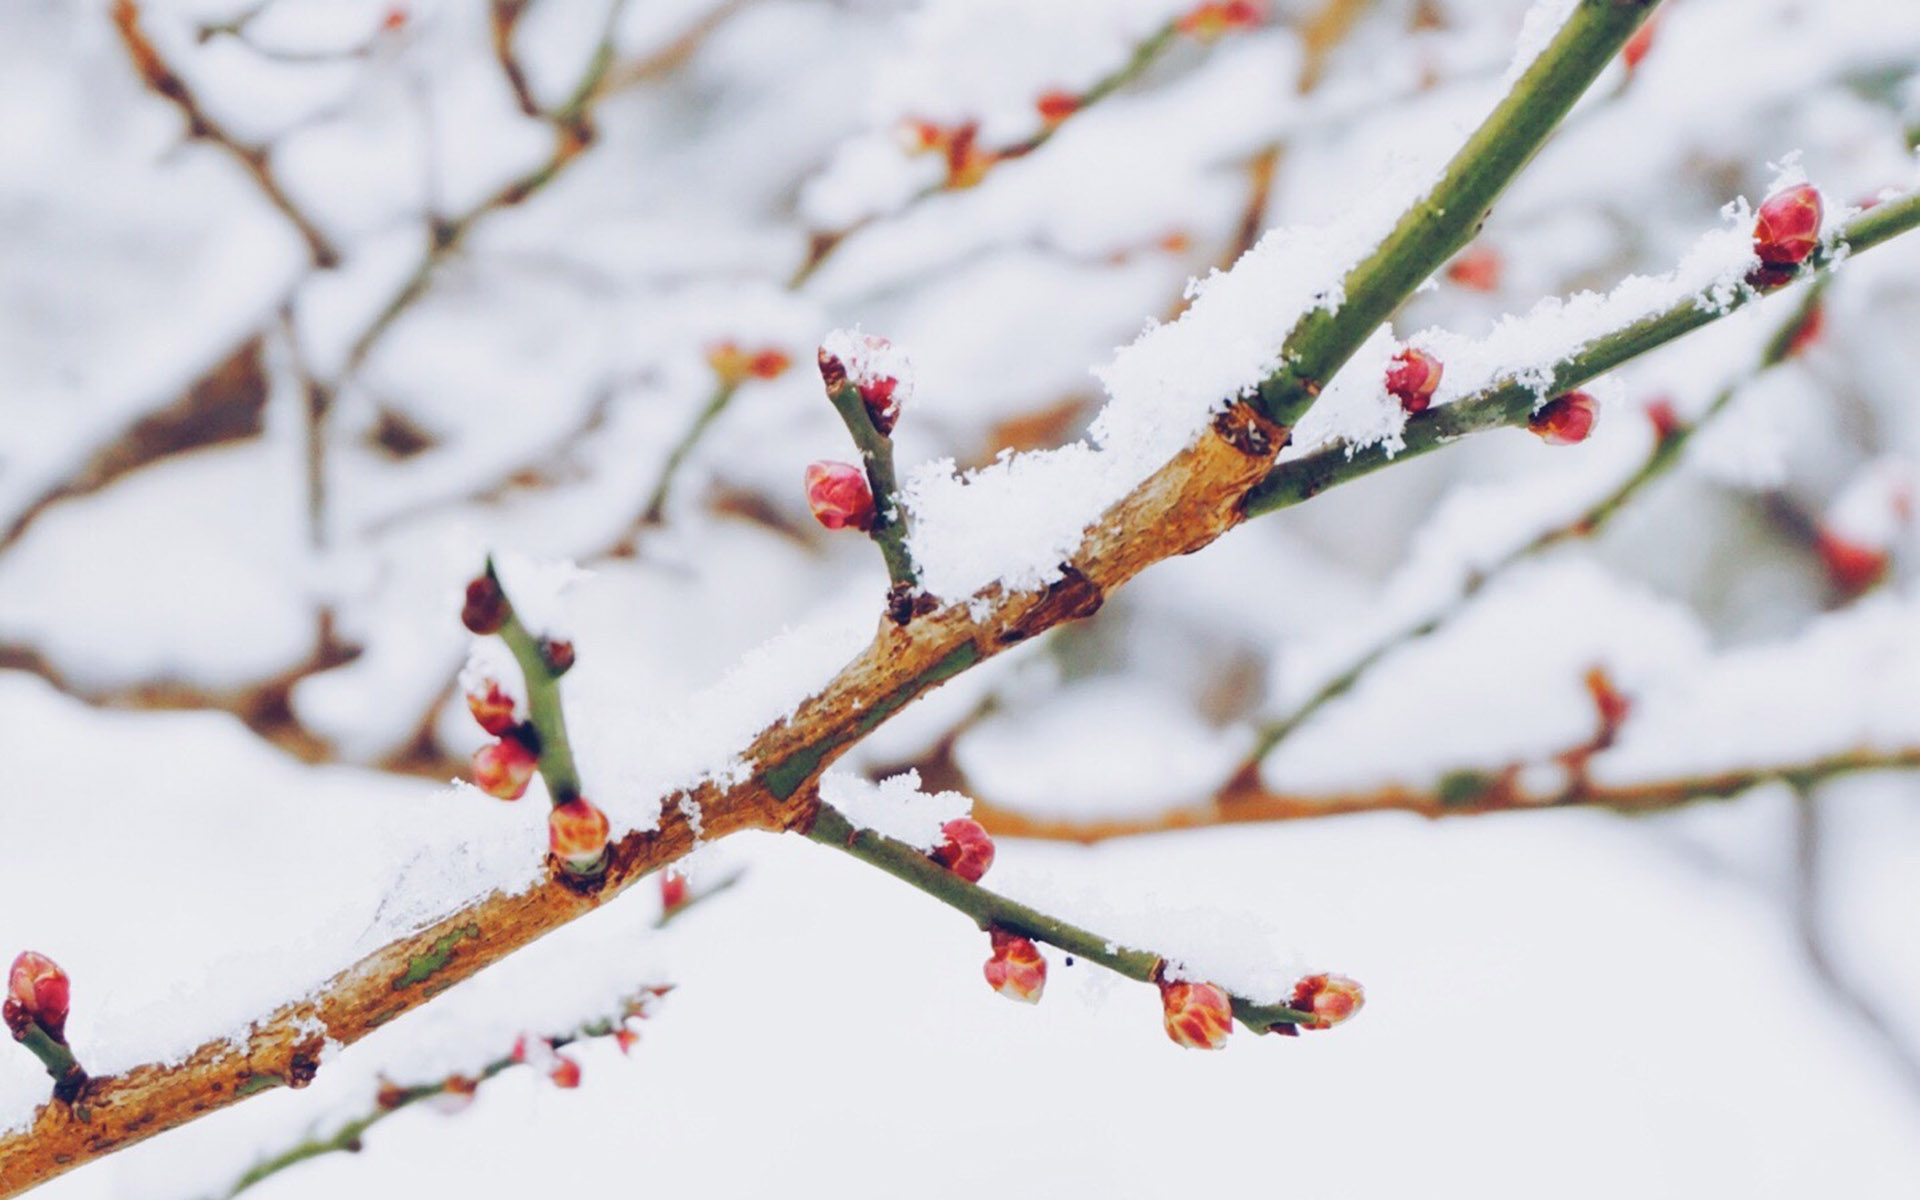 冬天雪景图片大全 冬日雪中植物唯美摄影图片(3)